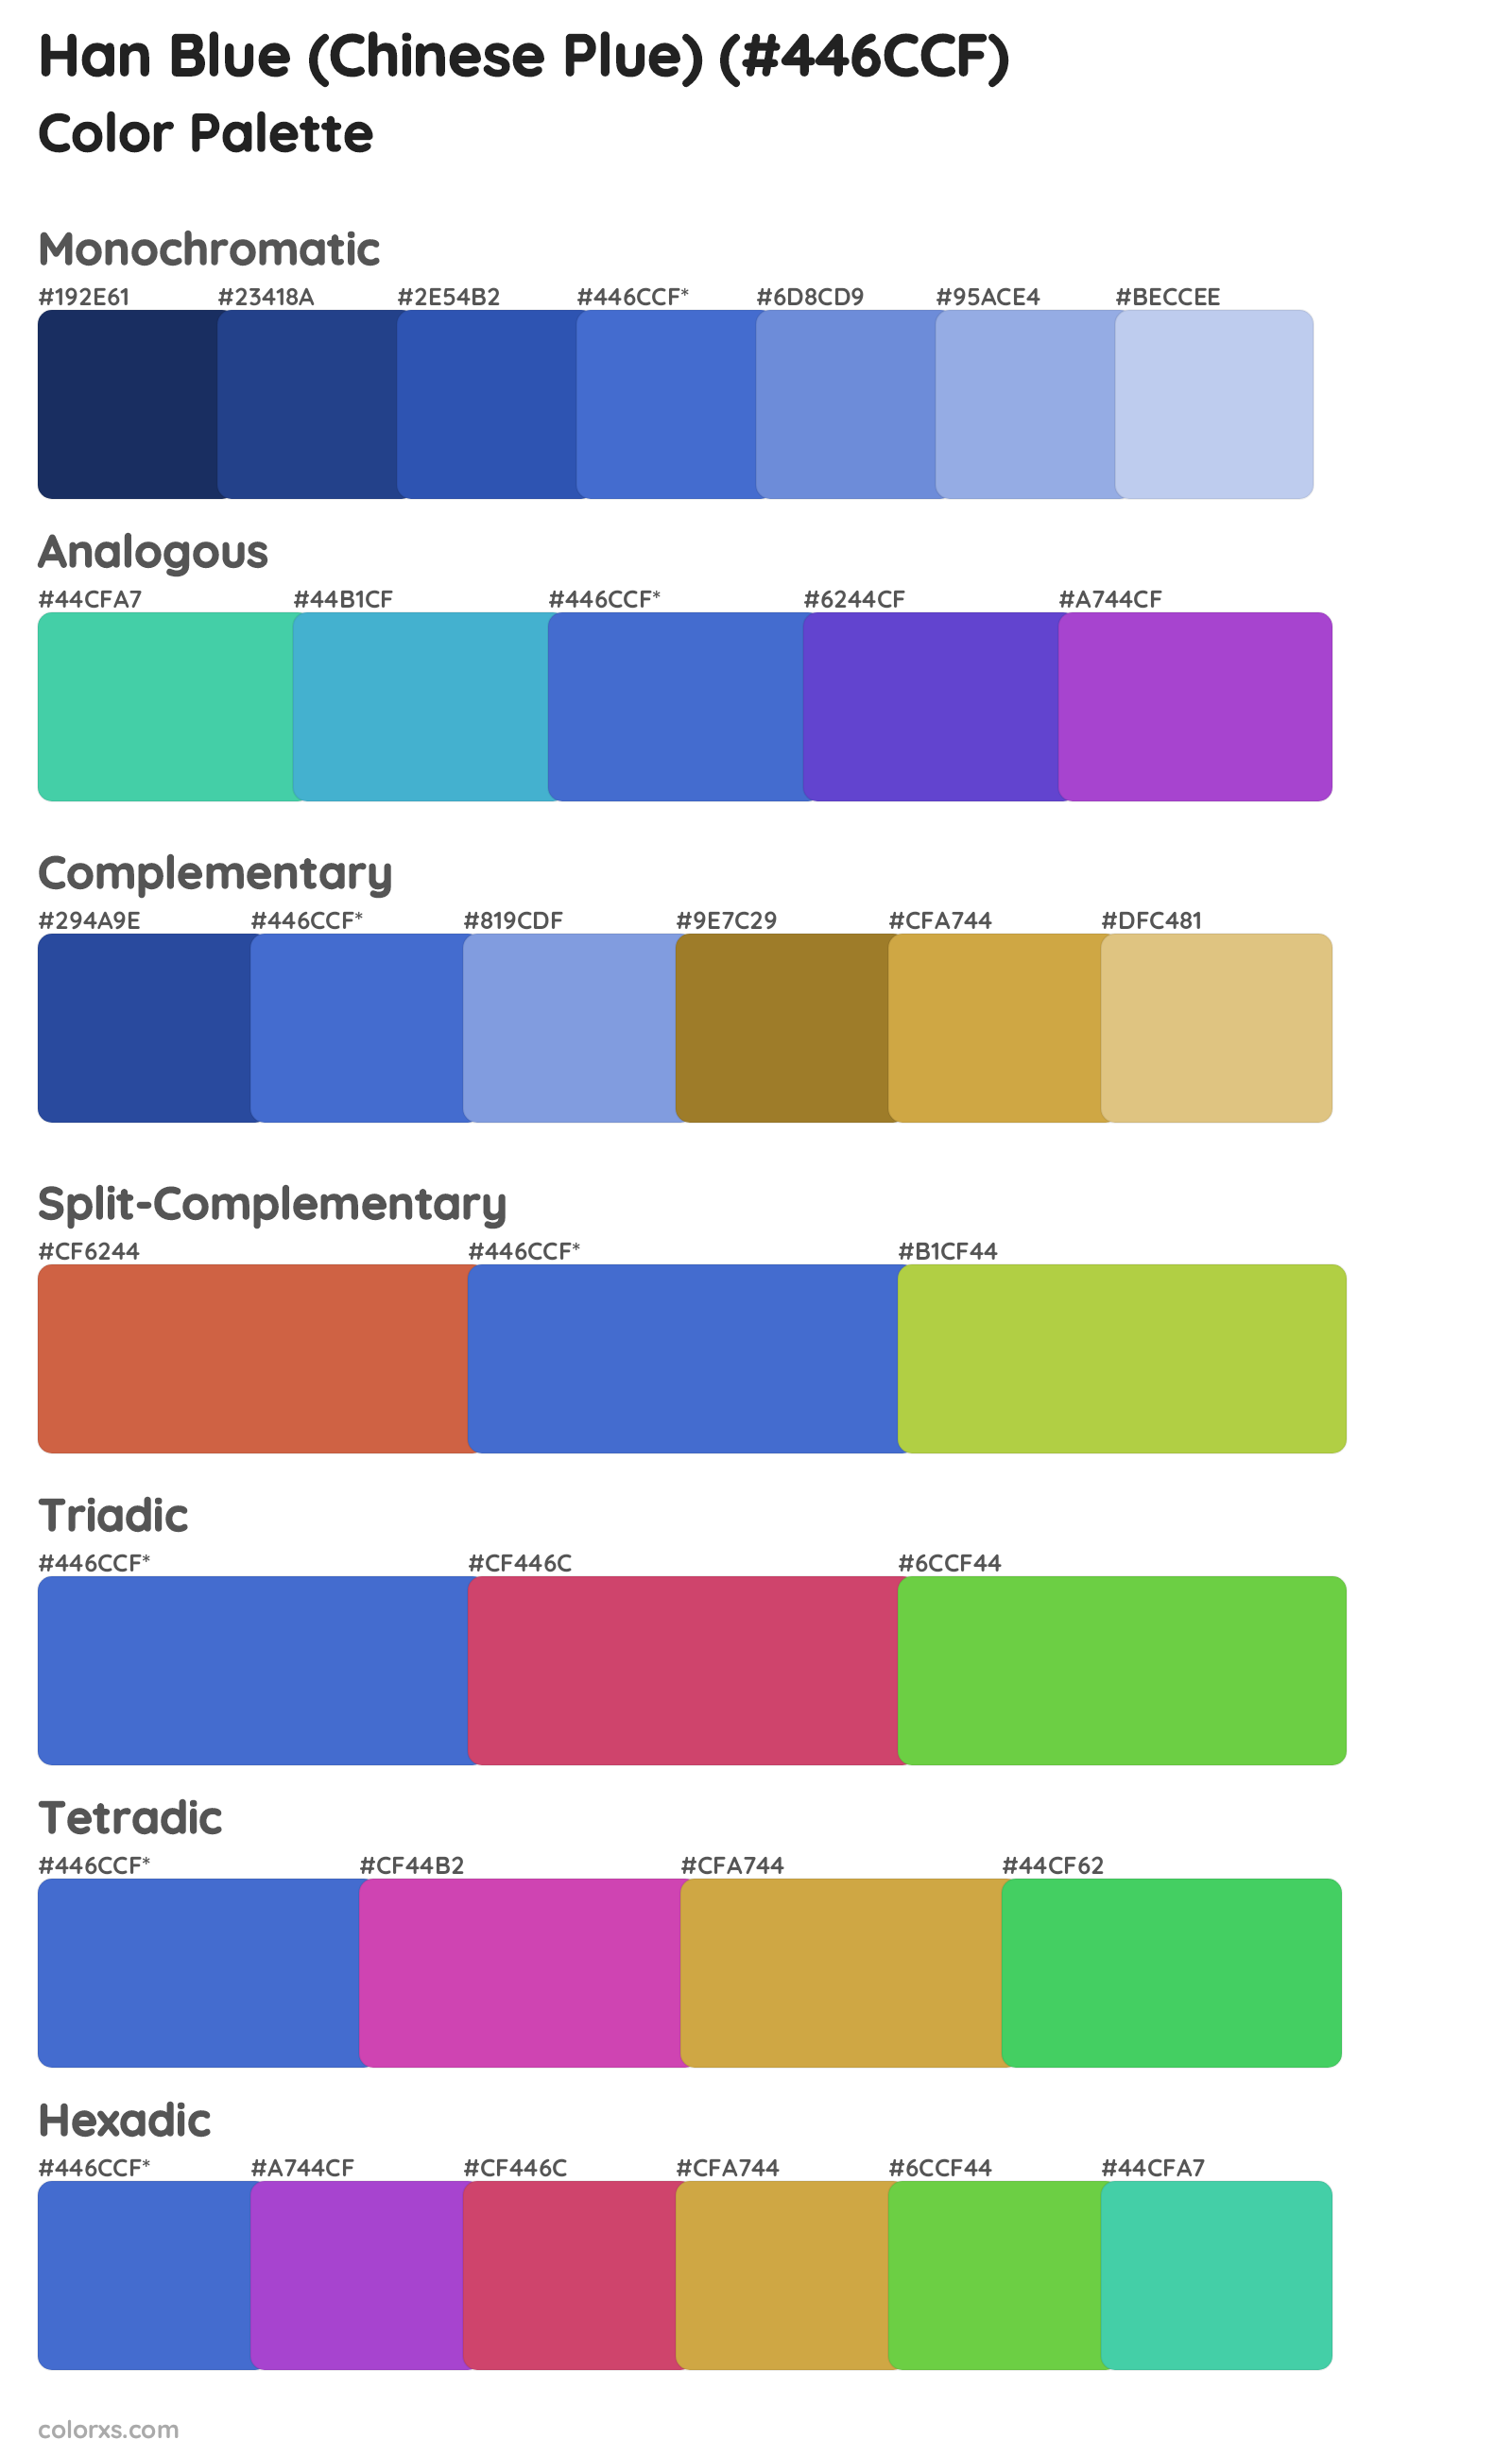 Han Blue (Chinese Plue) Color Scheme Palettes